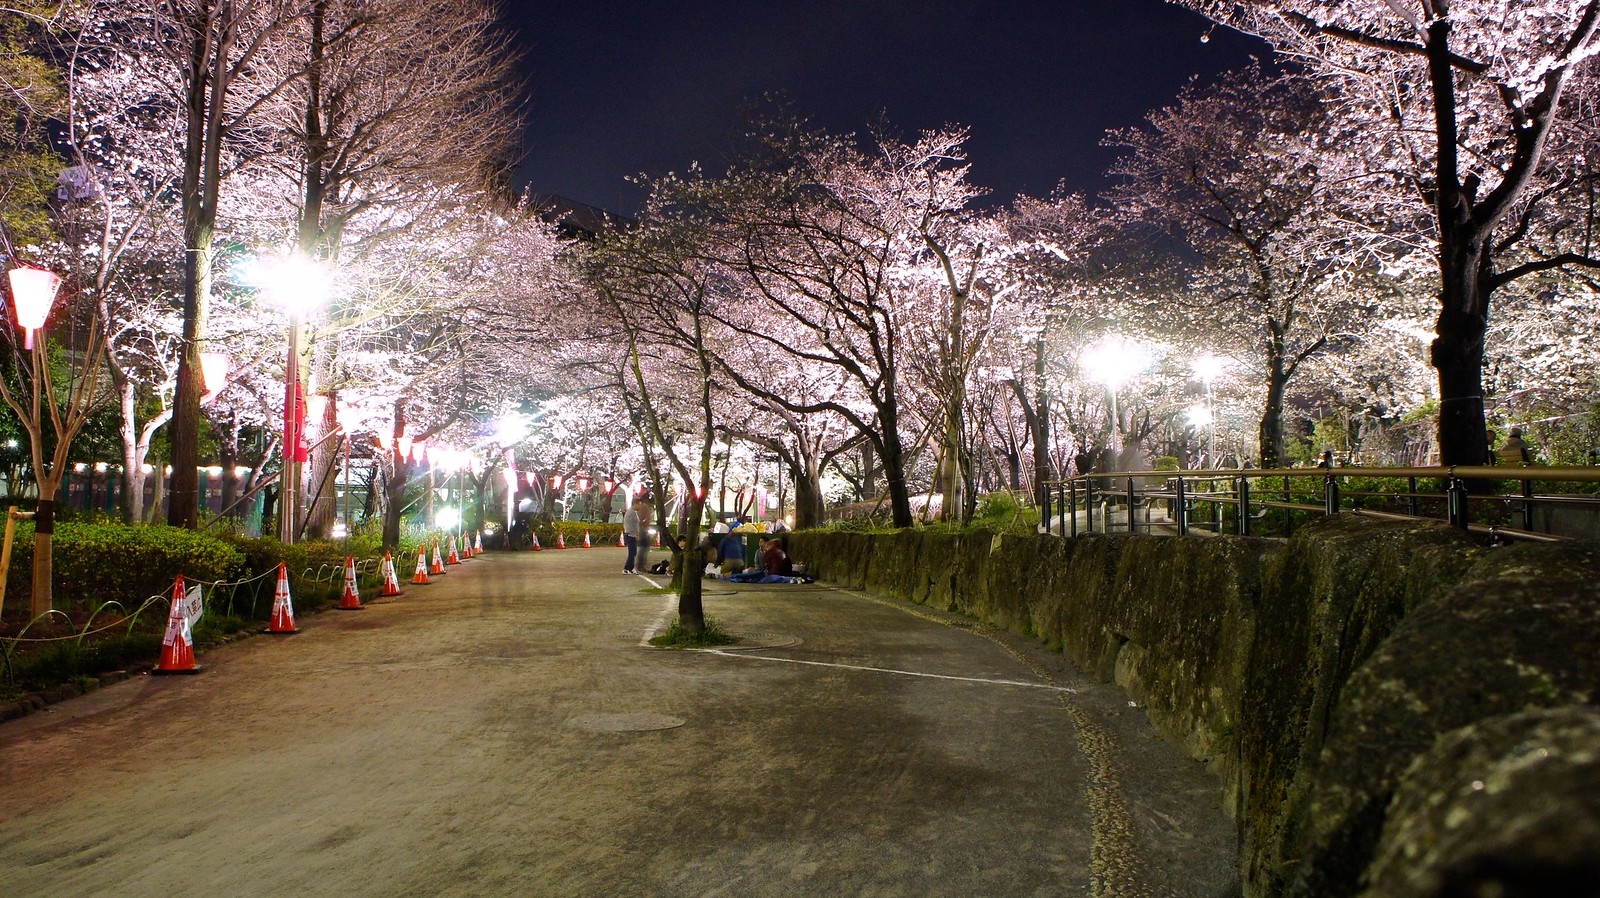 Tokyo Skytree and Cherry Blossom illumination (Sakura)